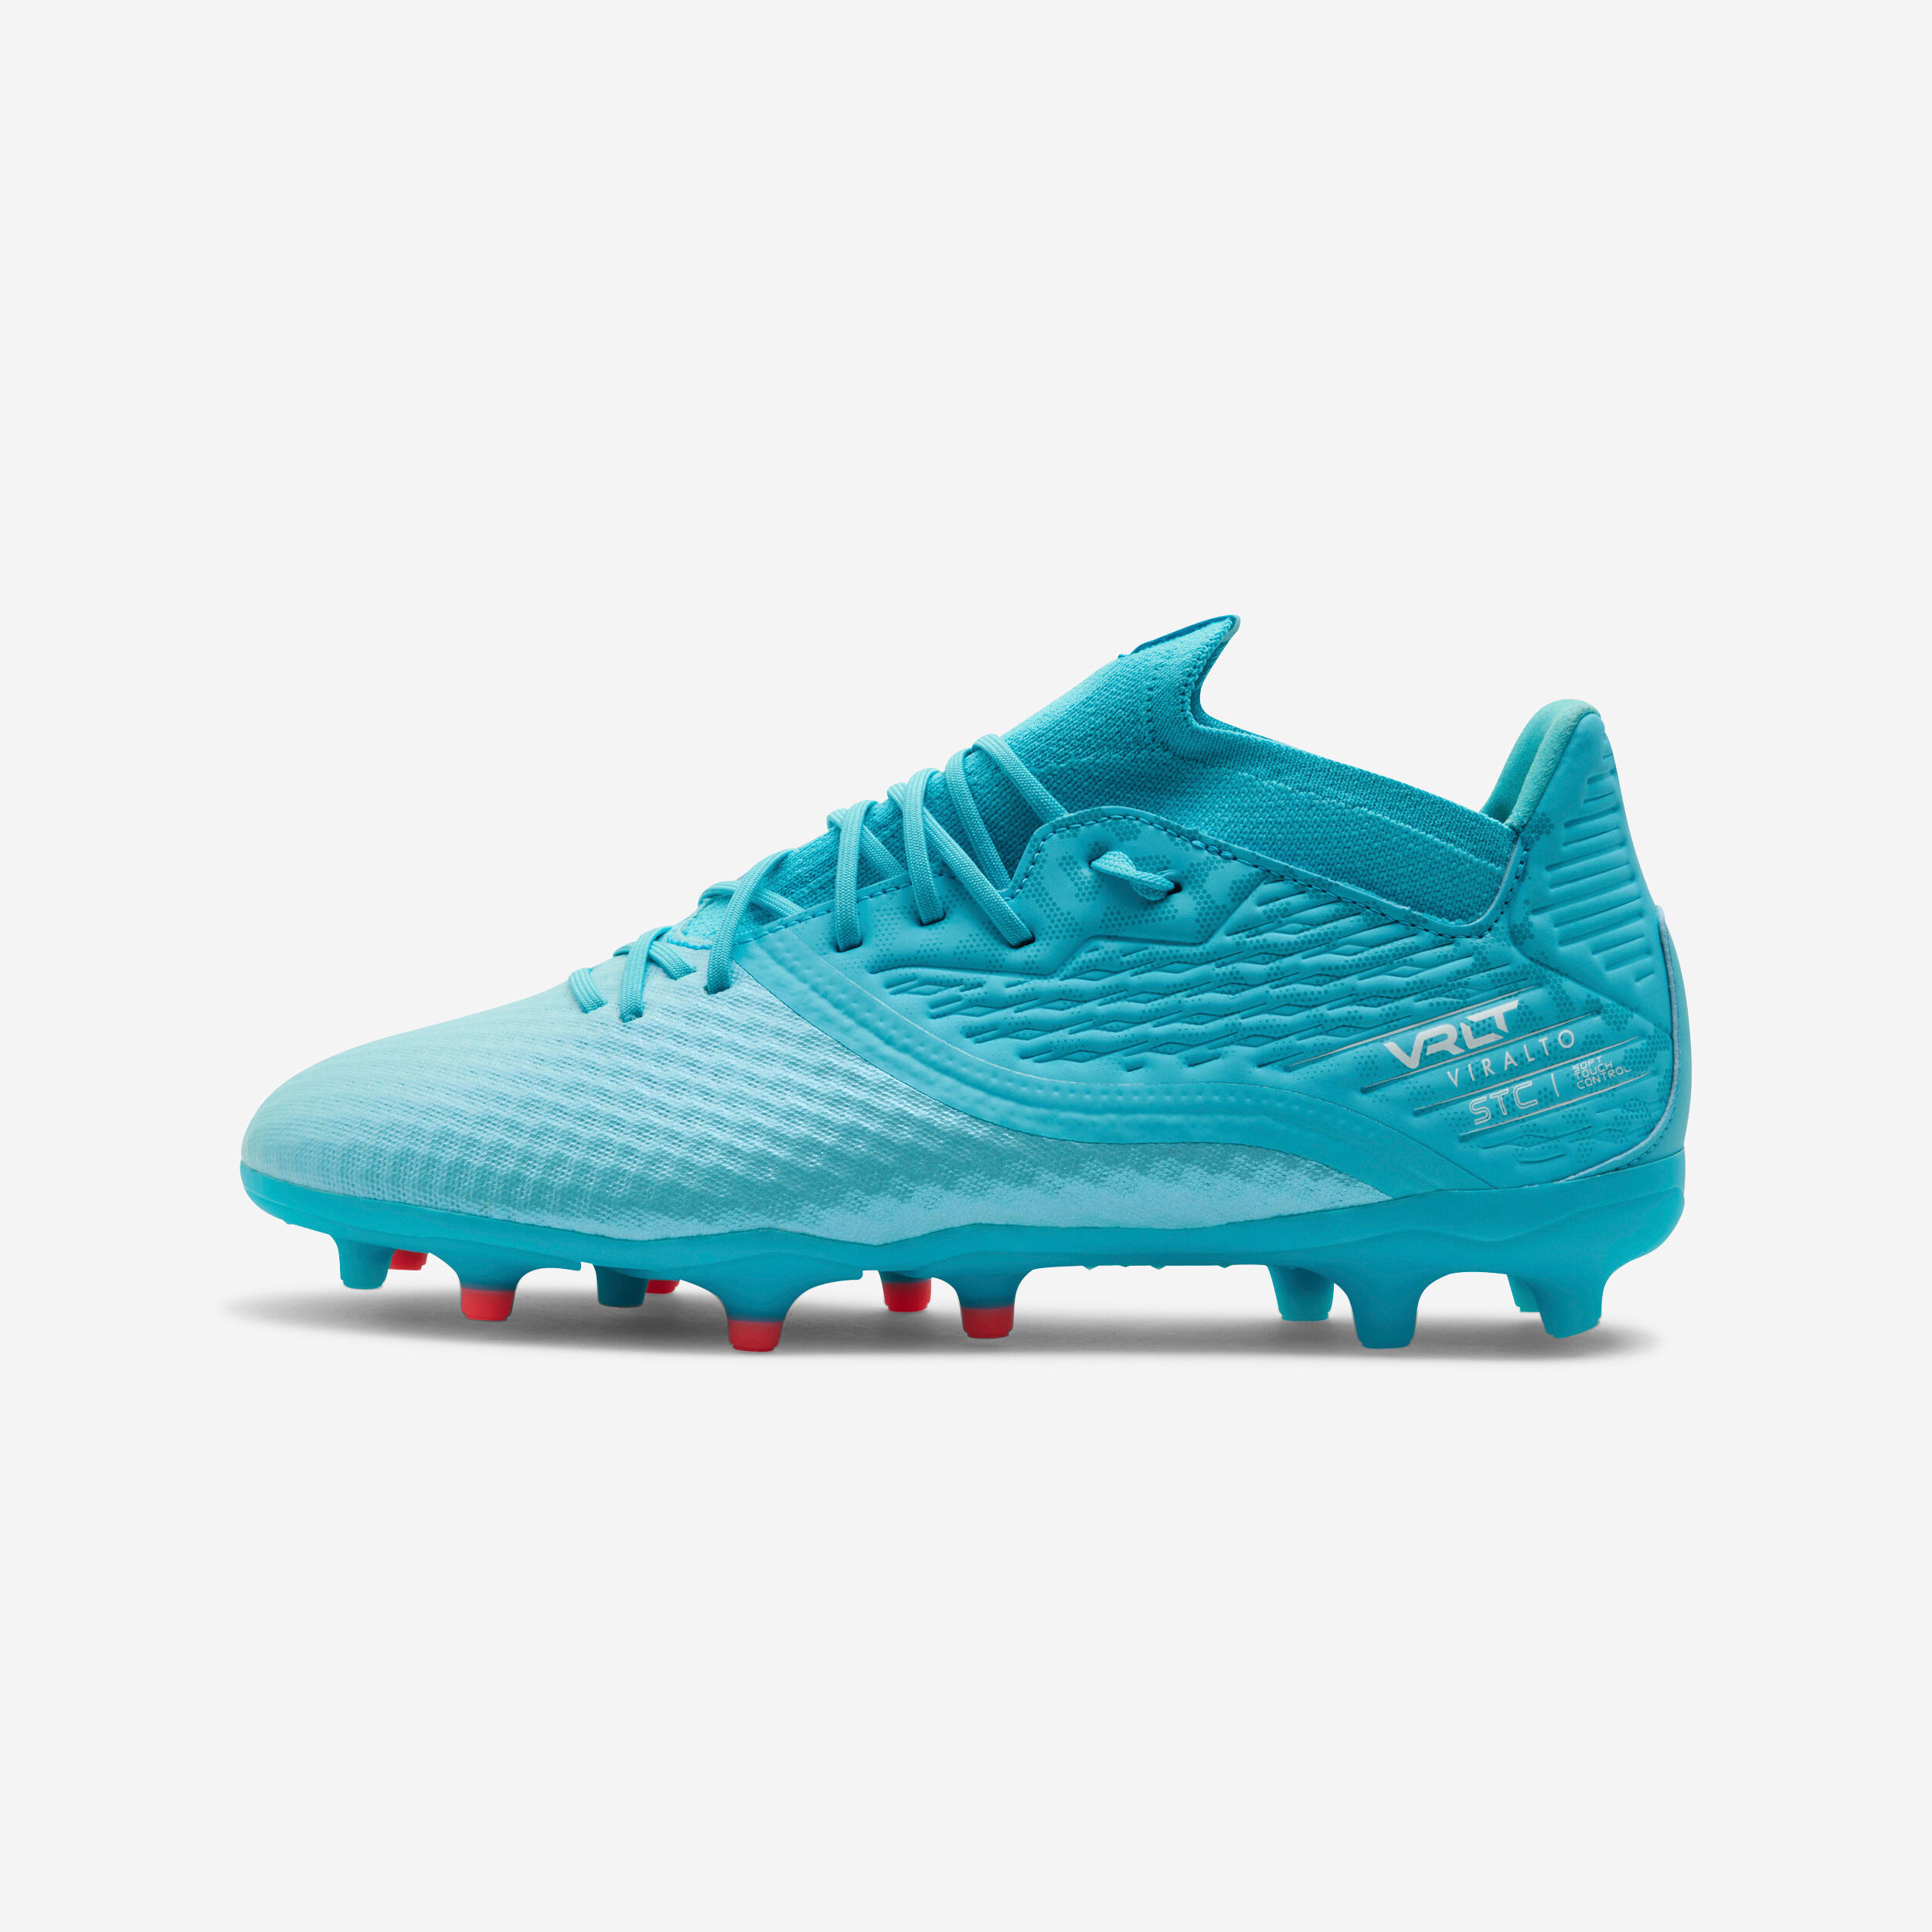 KIPSTA Football Boots Viralto III 3D AirMesh FG - Turquoise